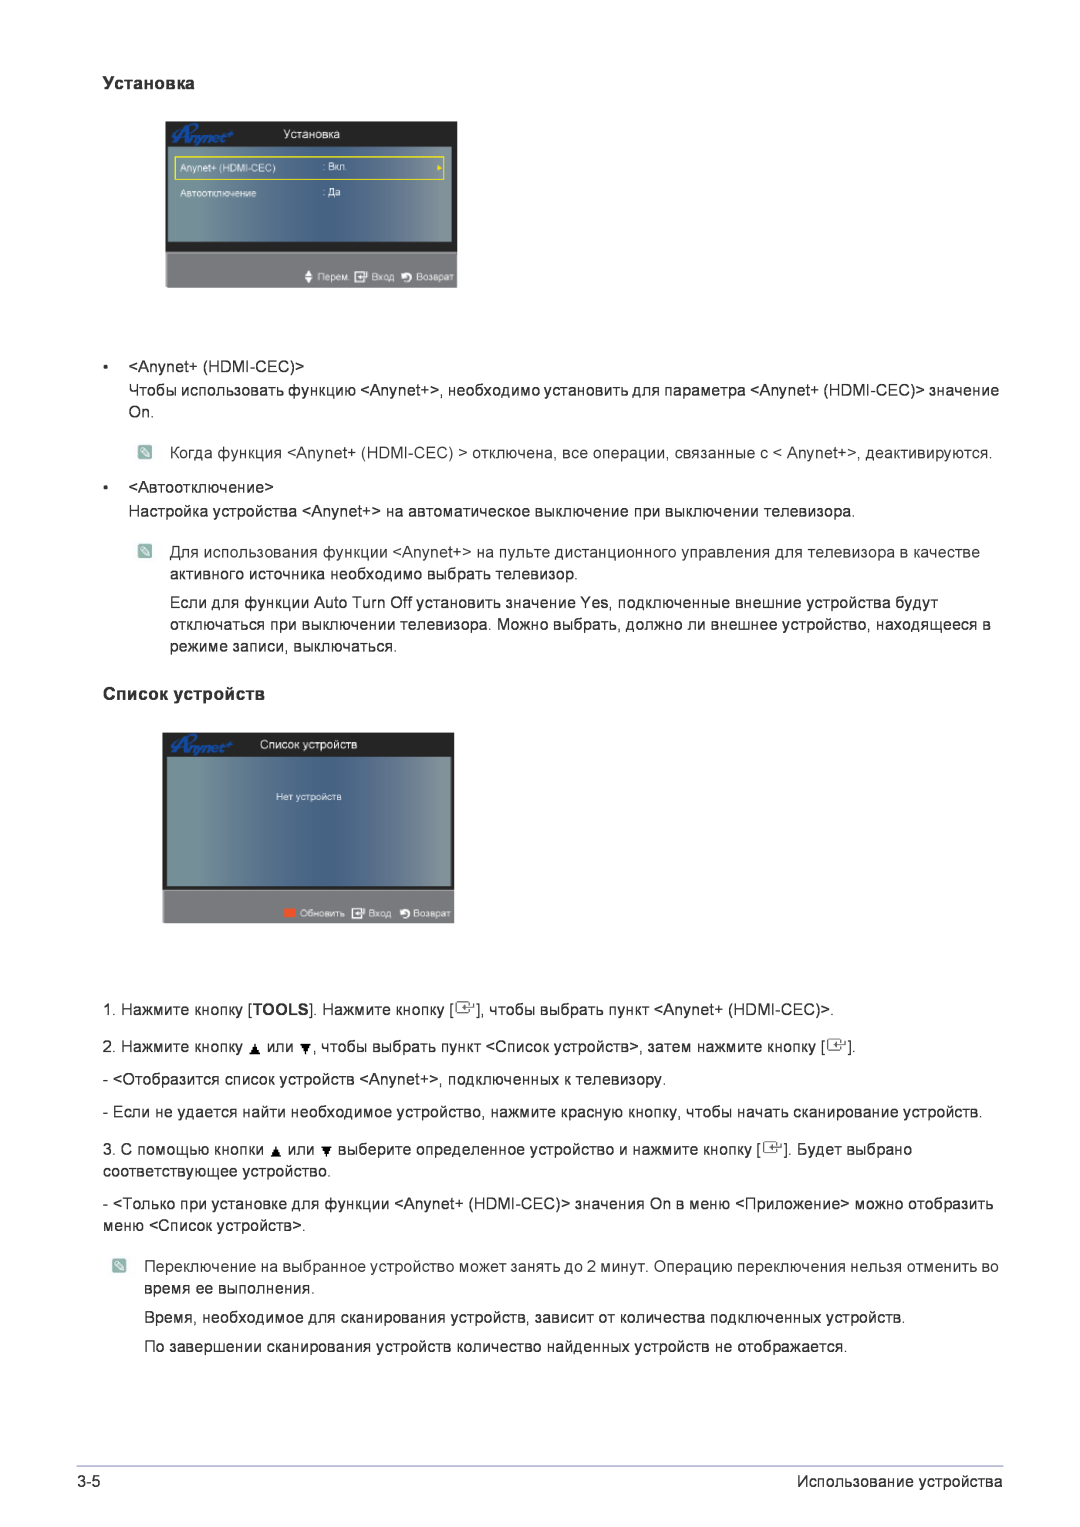 Samsung LS22FMDGF/EN manual Установка, Список устройств 